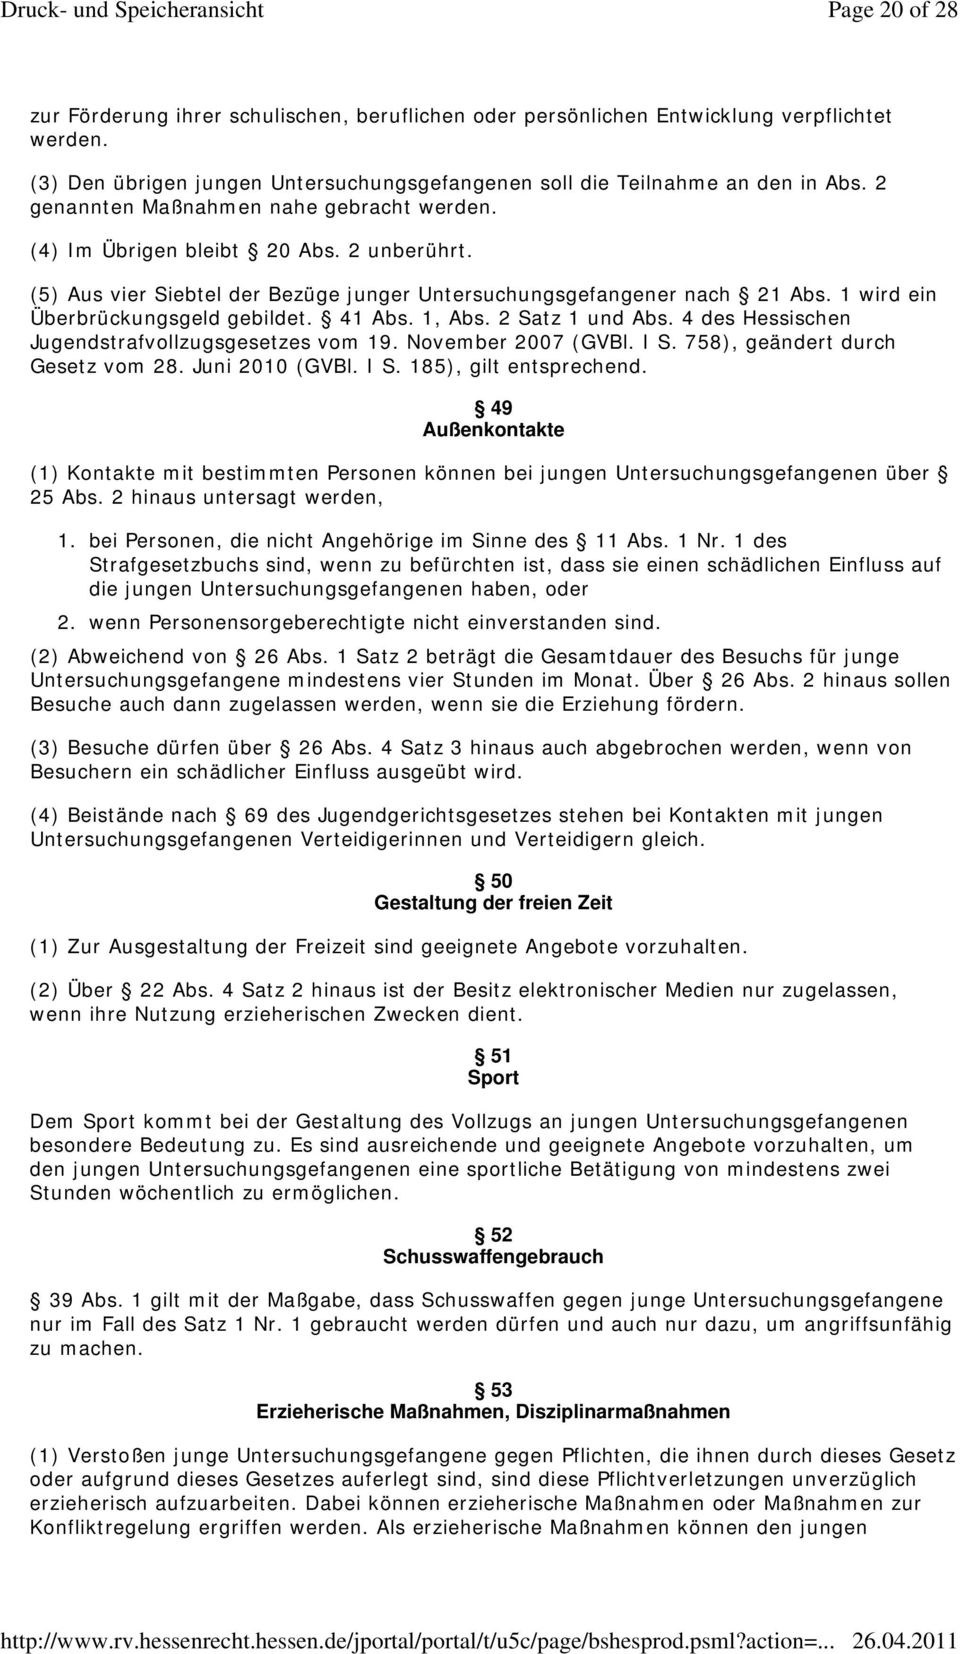 1 wird ein Überbrückungsgeld gebildet. 41 Abs. 1, Abs. 2 Satz 1 und Abs. 4 des Hessischen Jugendstrafvollzugsgesetzes vom 19. November 2007 (GVBl. I S. 758), geändert durch Gesetz vom 28.